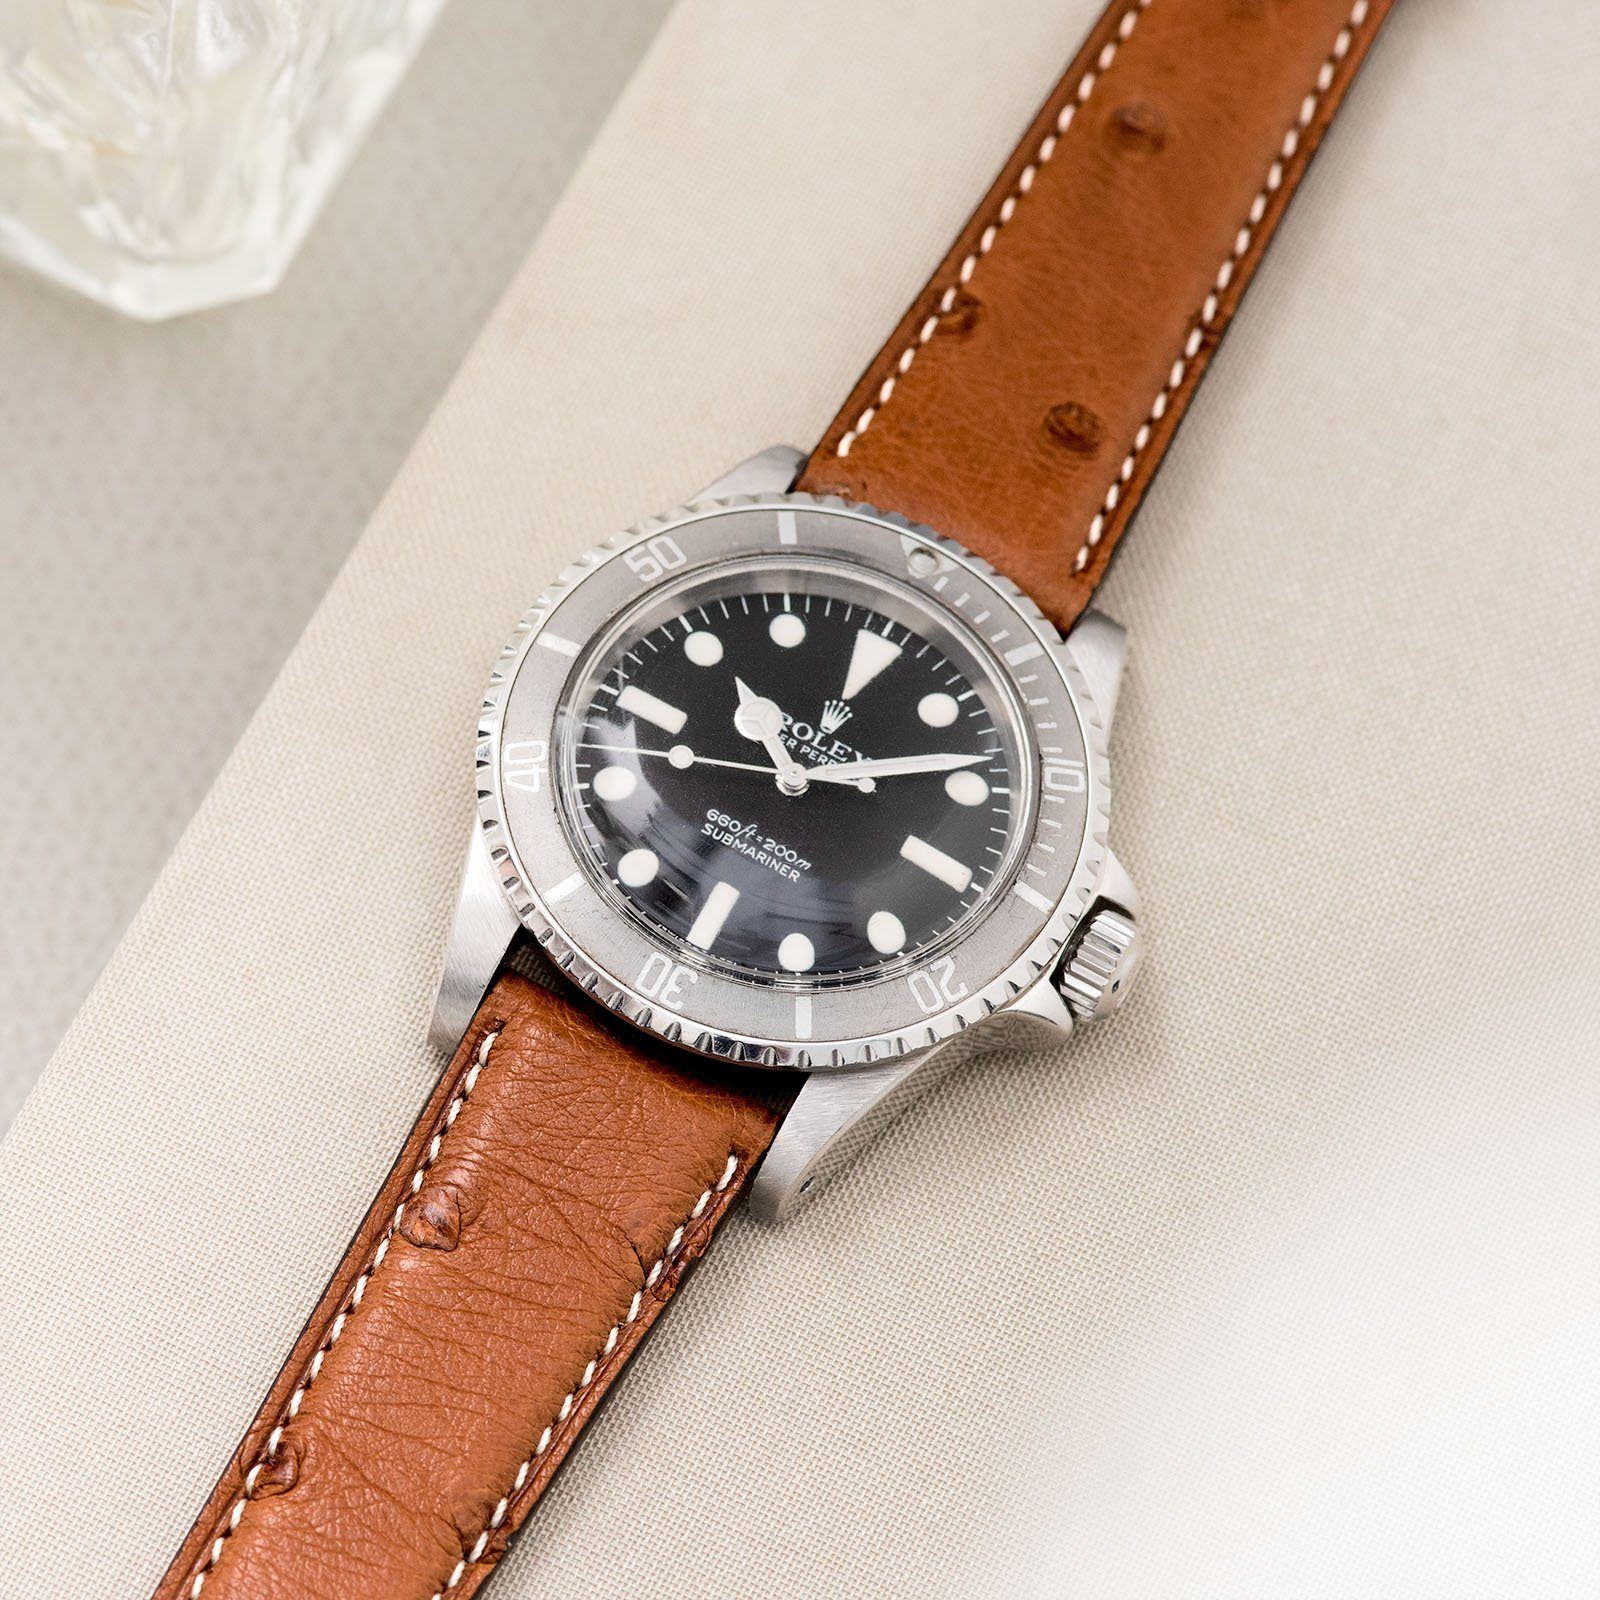 Rolex Cognac Brown Ostrich Leather Watch Strap